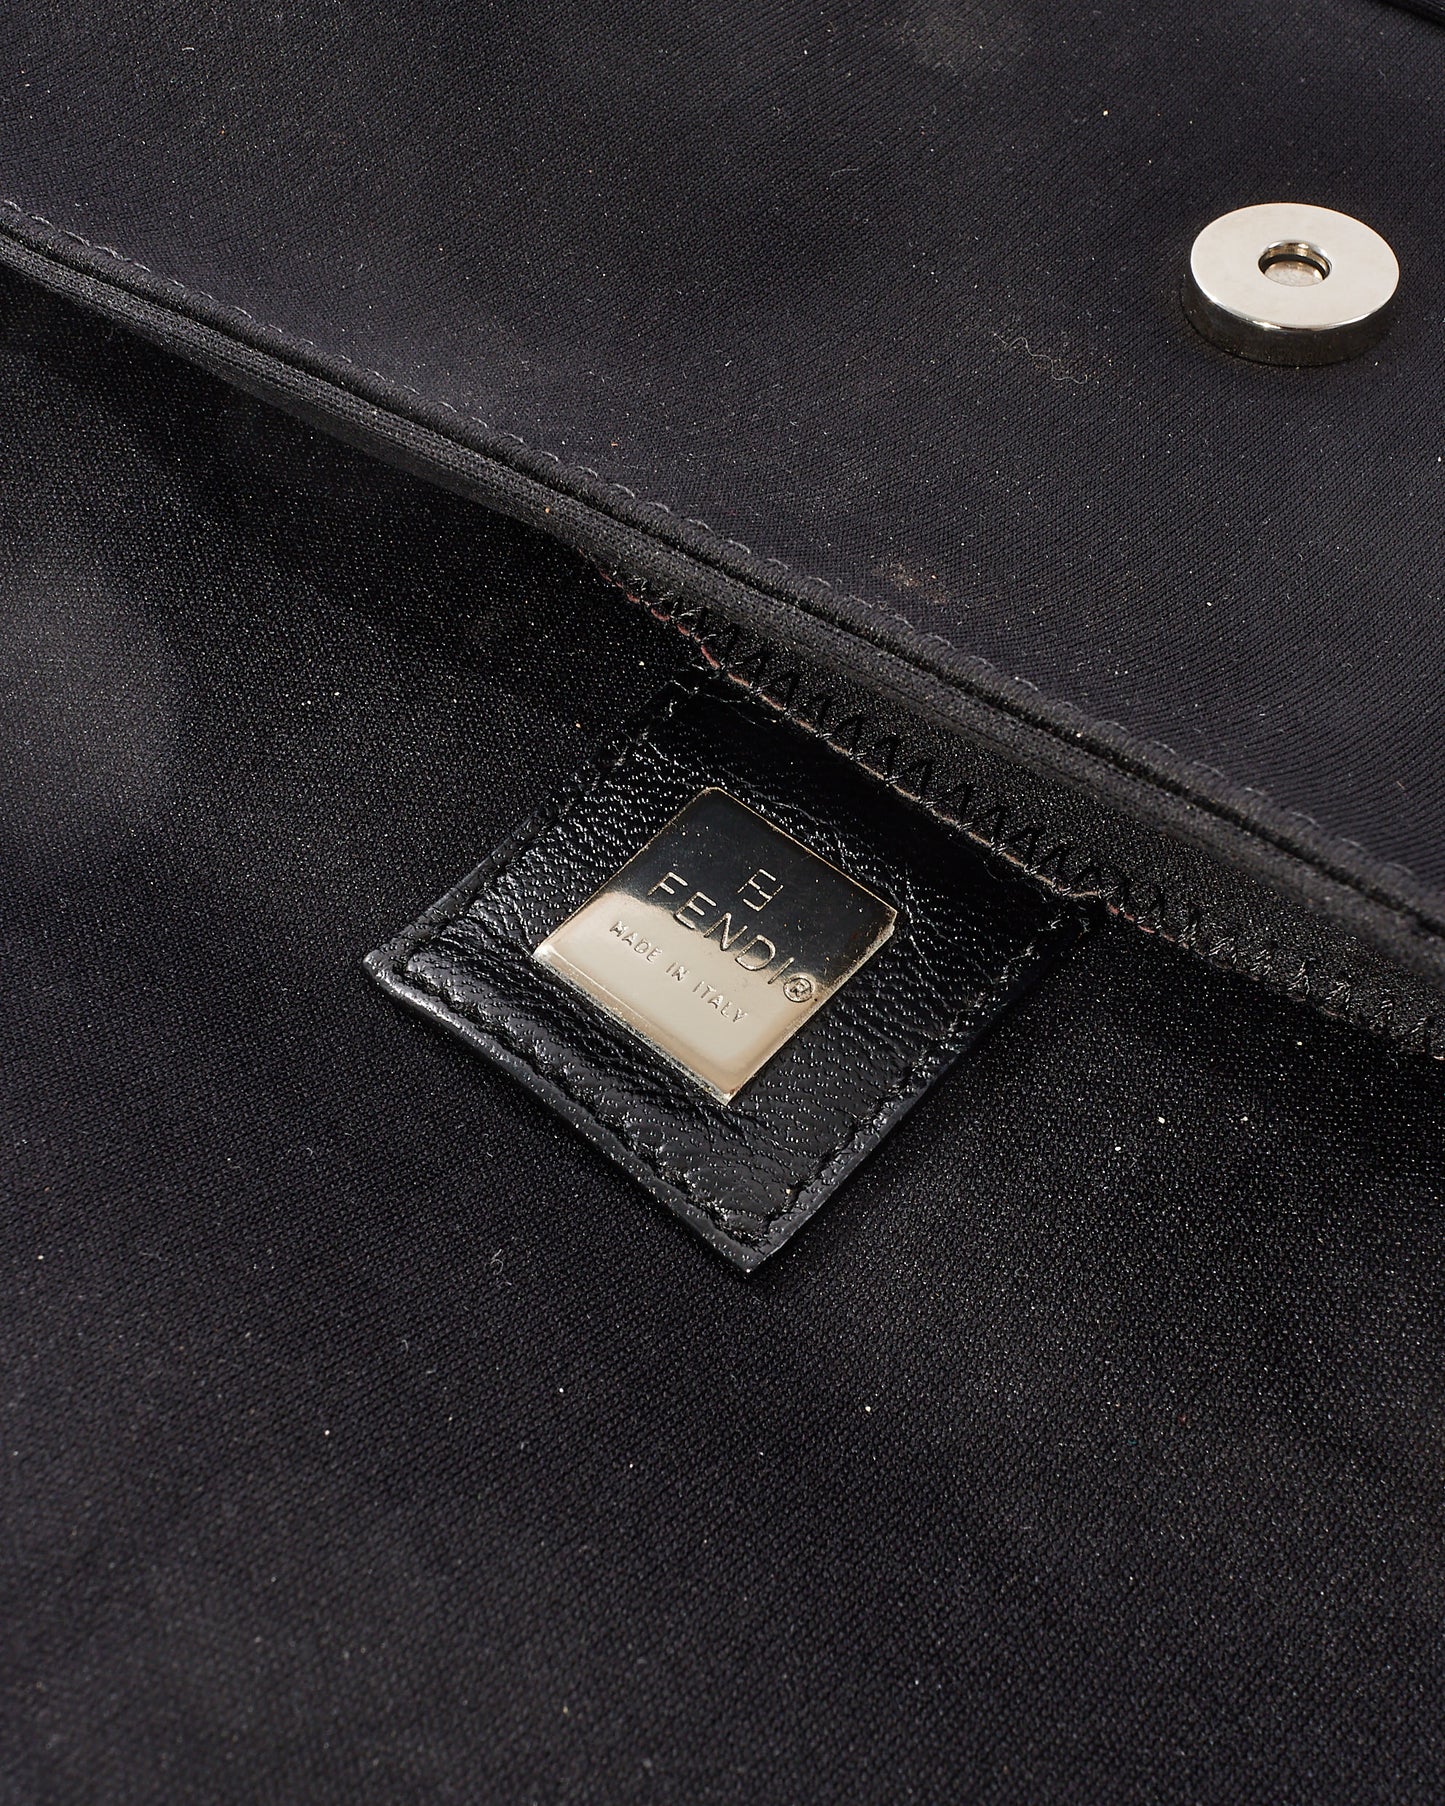 Fendi Vintage Black Neoprene Baguette Shoulder Bag